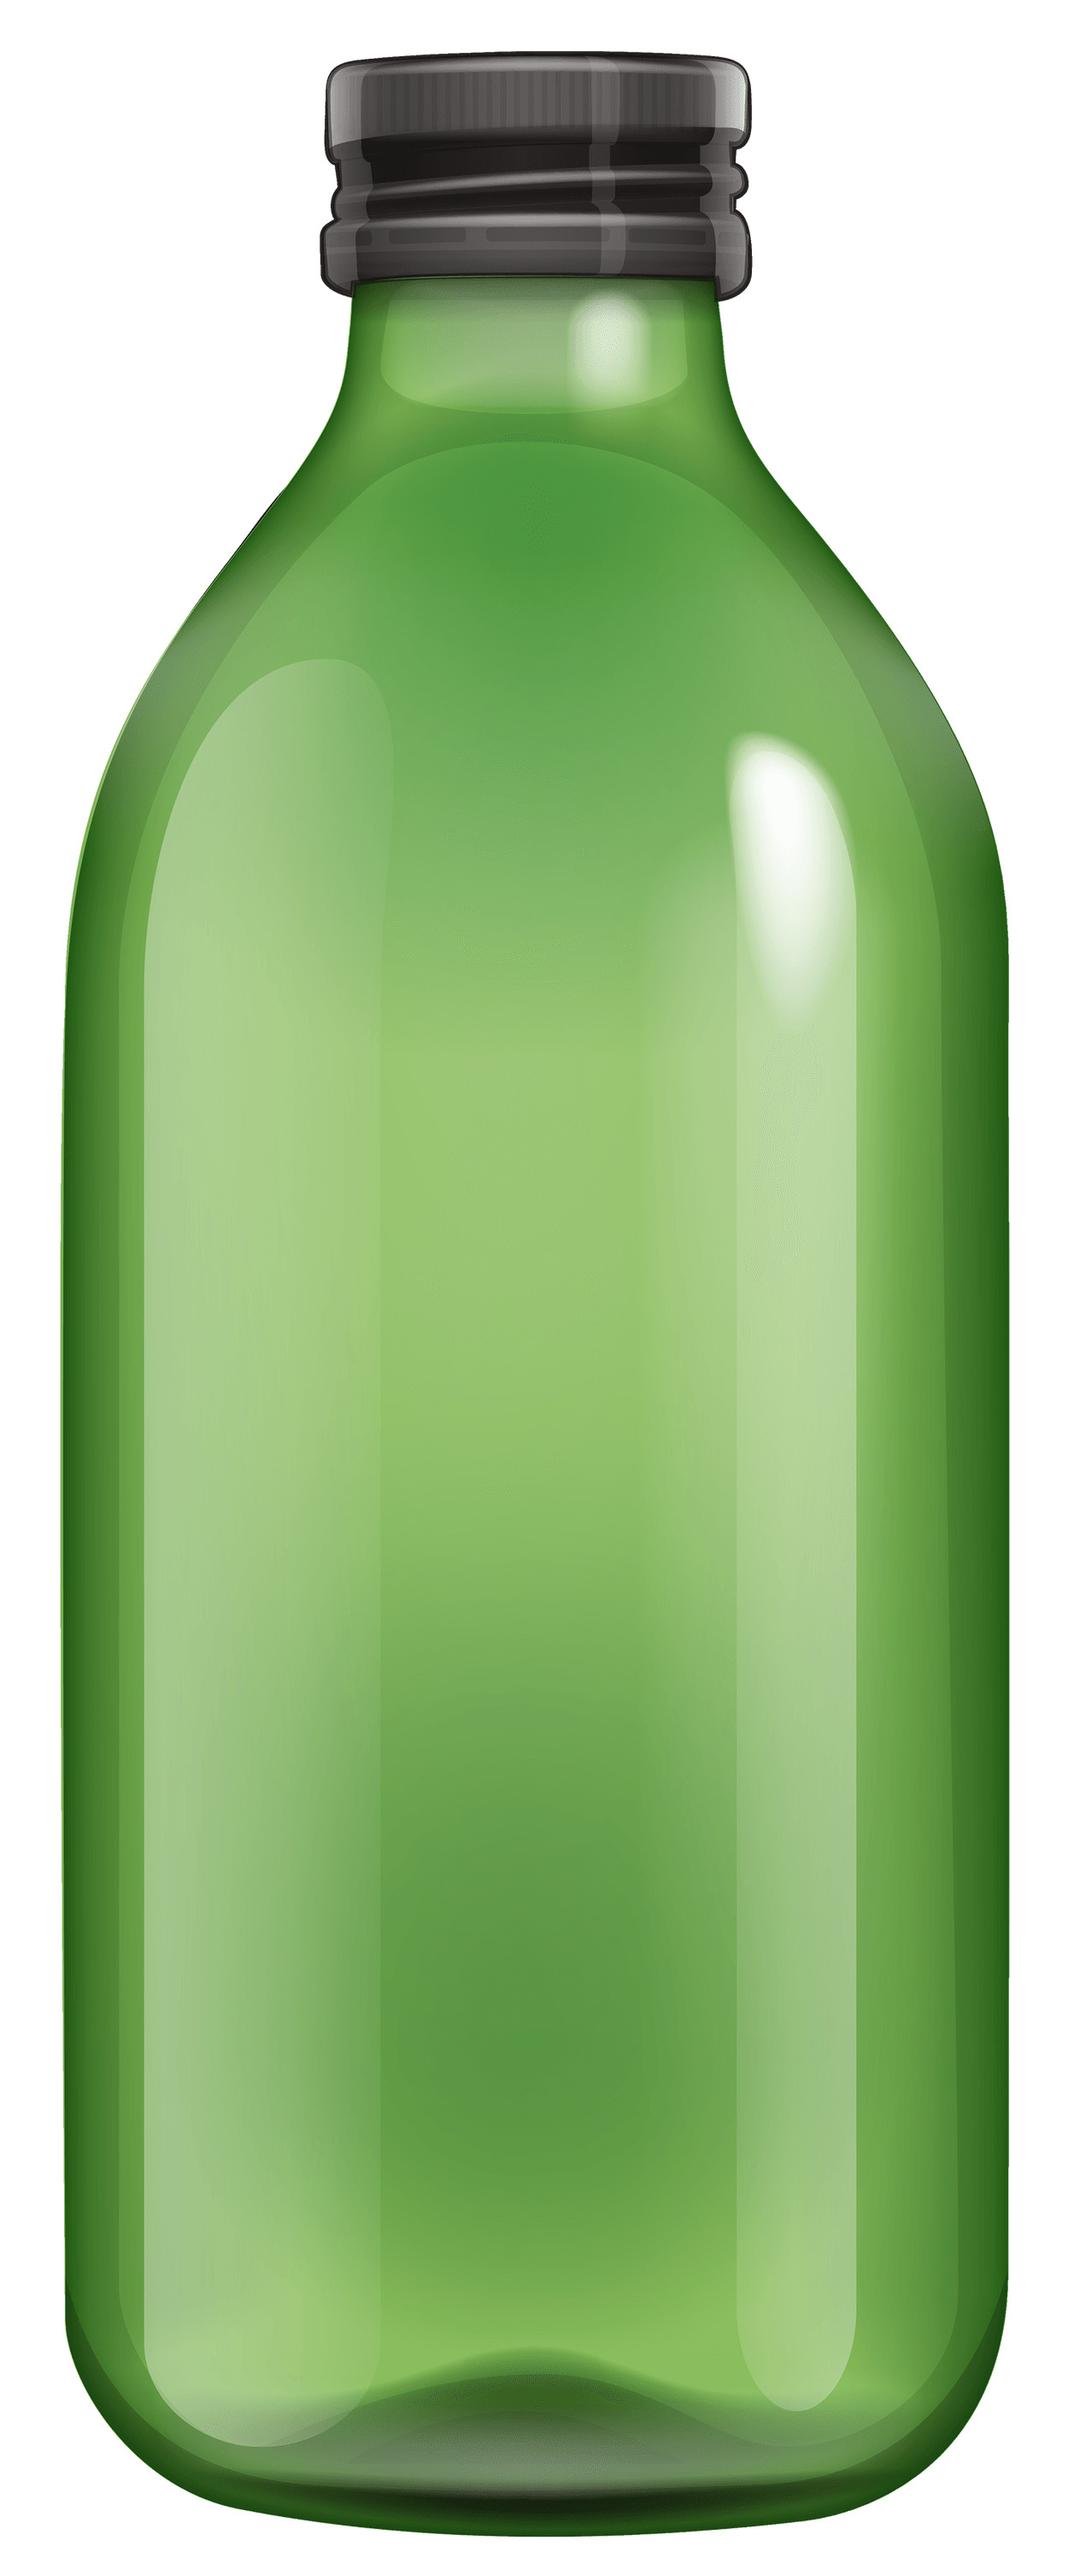 Bottle Green png transparent